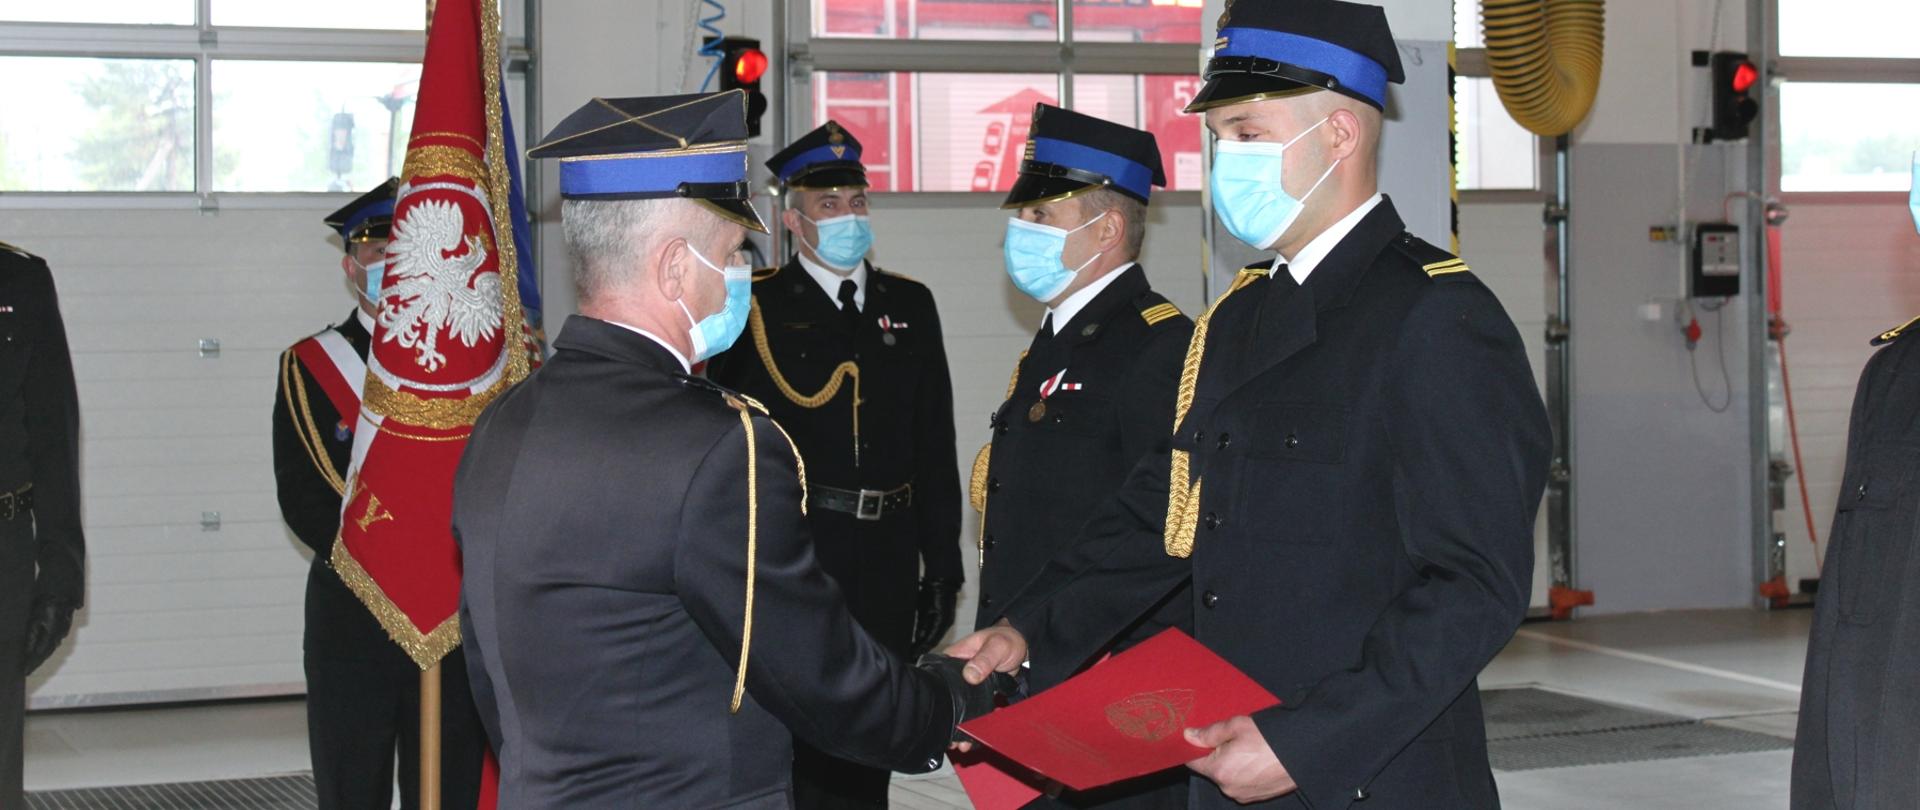 komendant powiatowy wręcza strażakowi akt mianowania na wyższy stopień służbowy w tyle poczet sztandarowy strażacy w mundurach wyjściowych